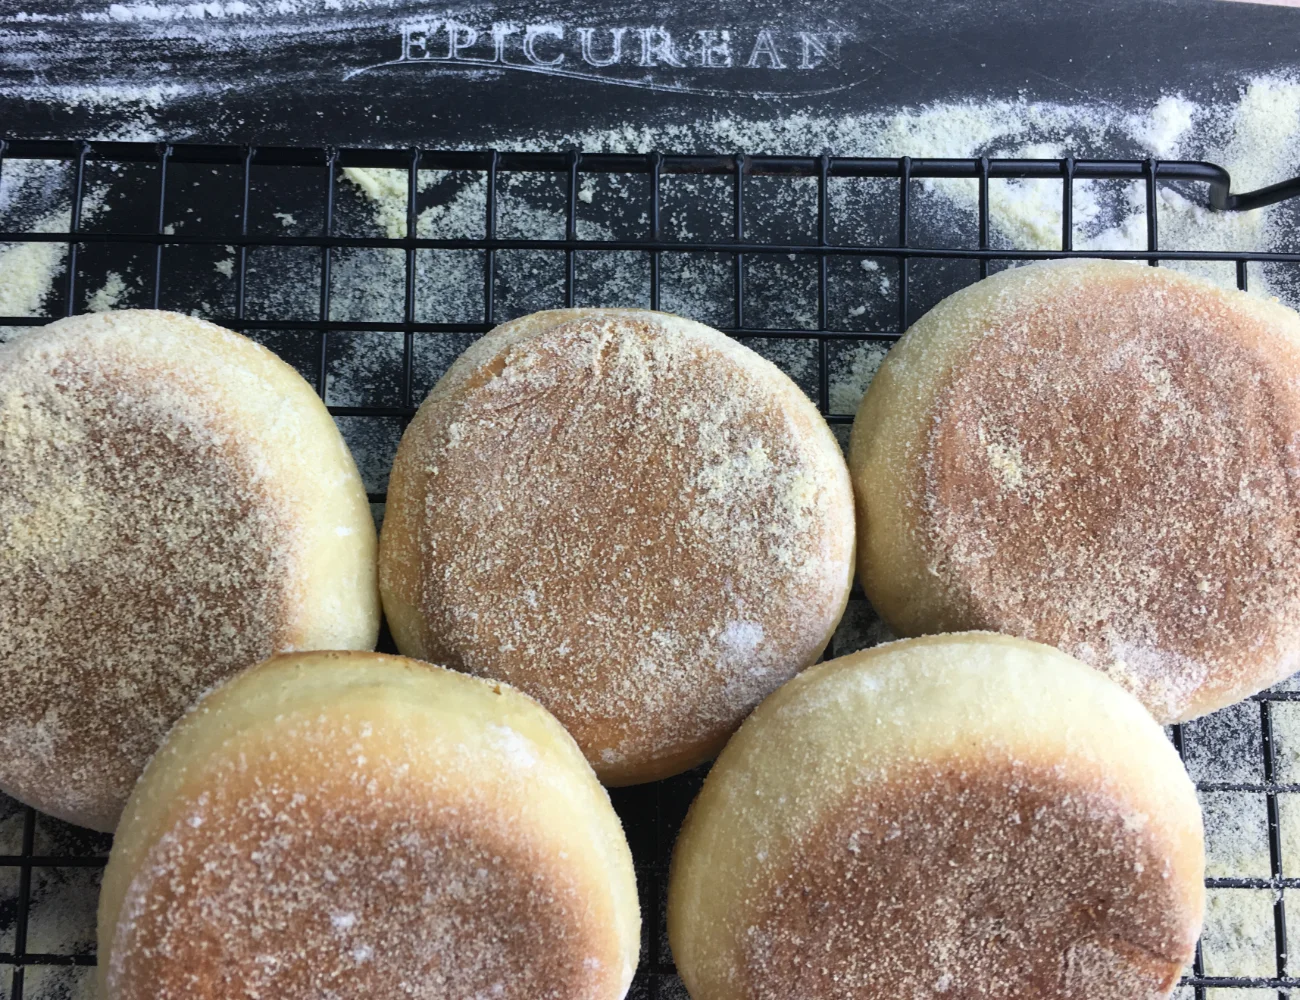 English Muffin Bread - Kitchen Gidget